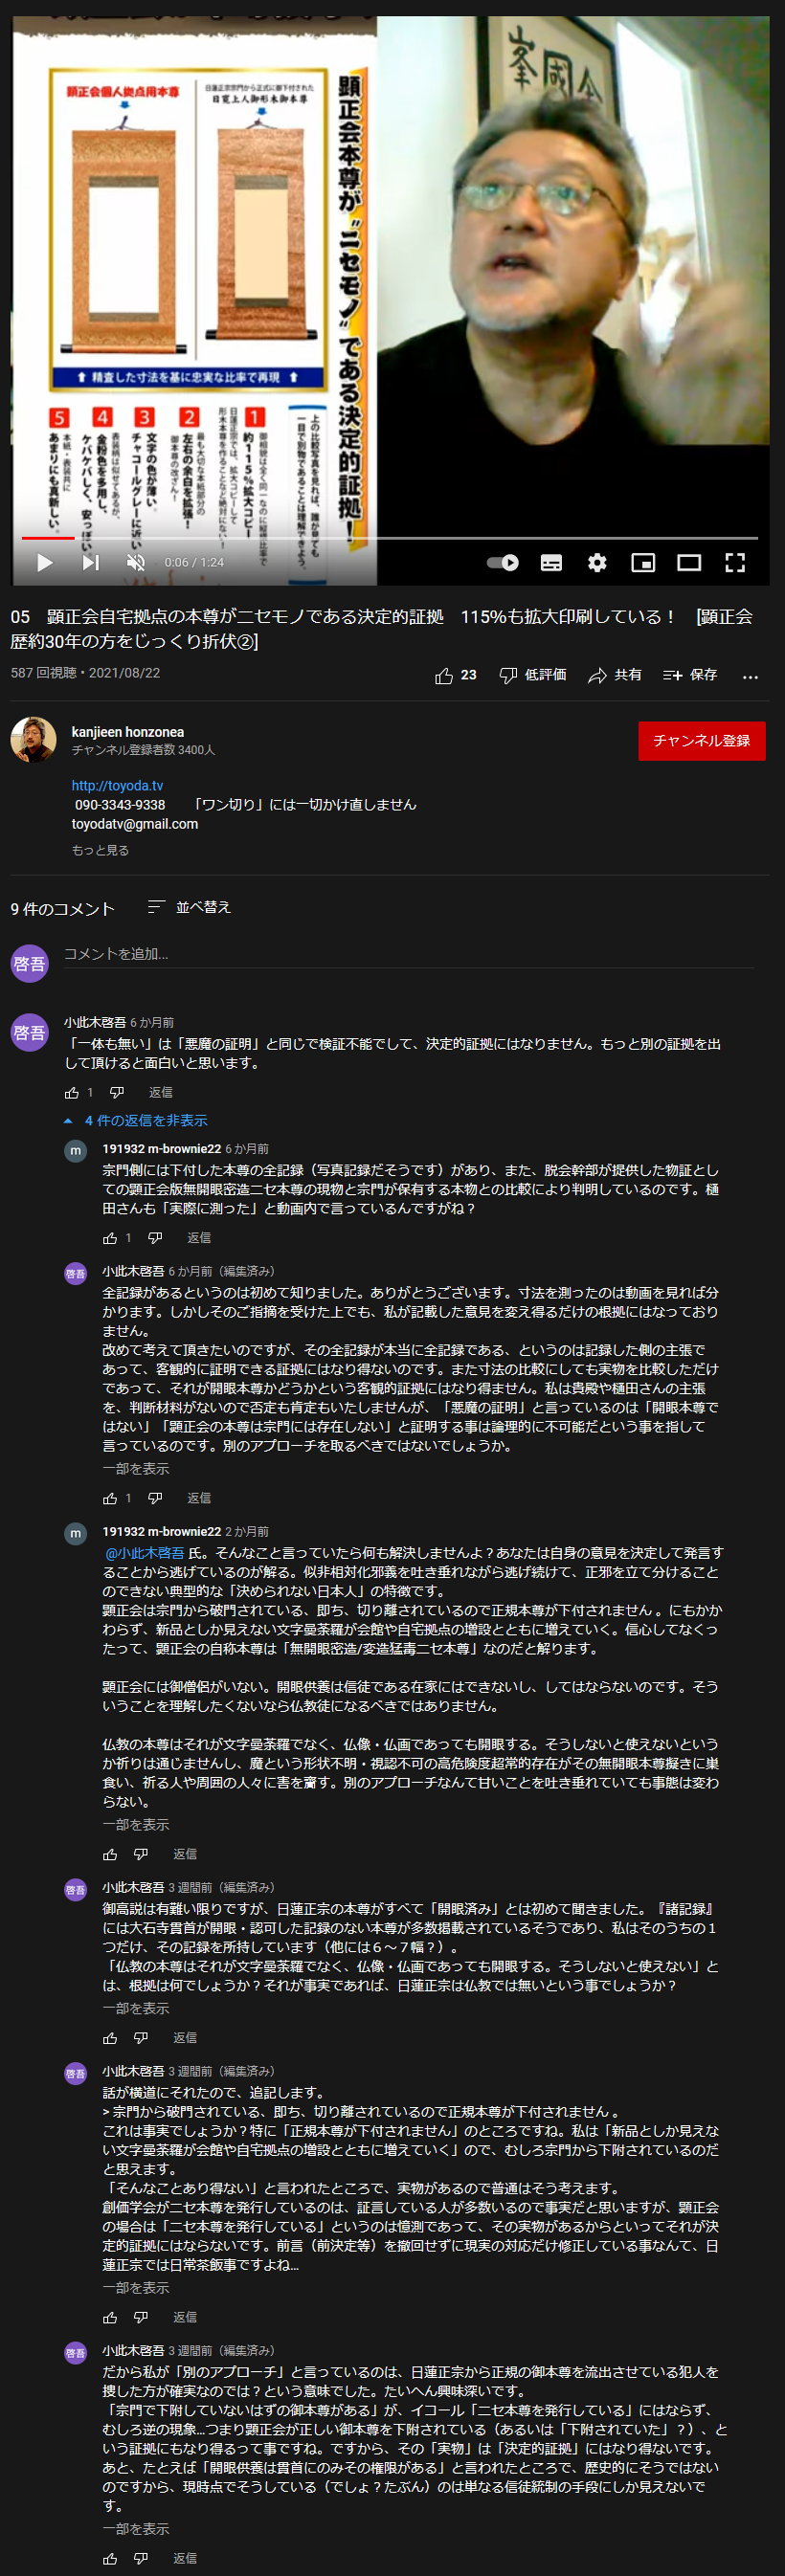 樋田昌志氏作成動画に対する、非表示になっているコメントのスクリーンショット